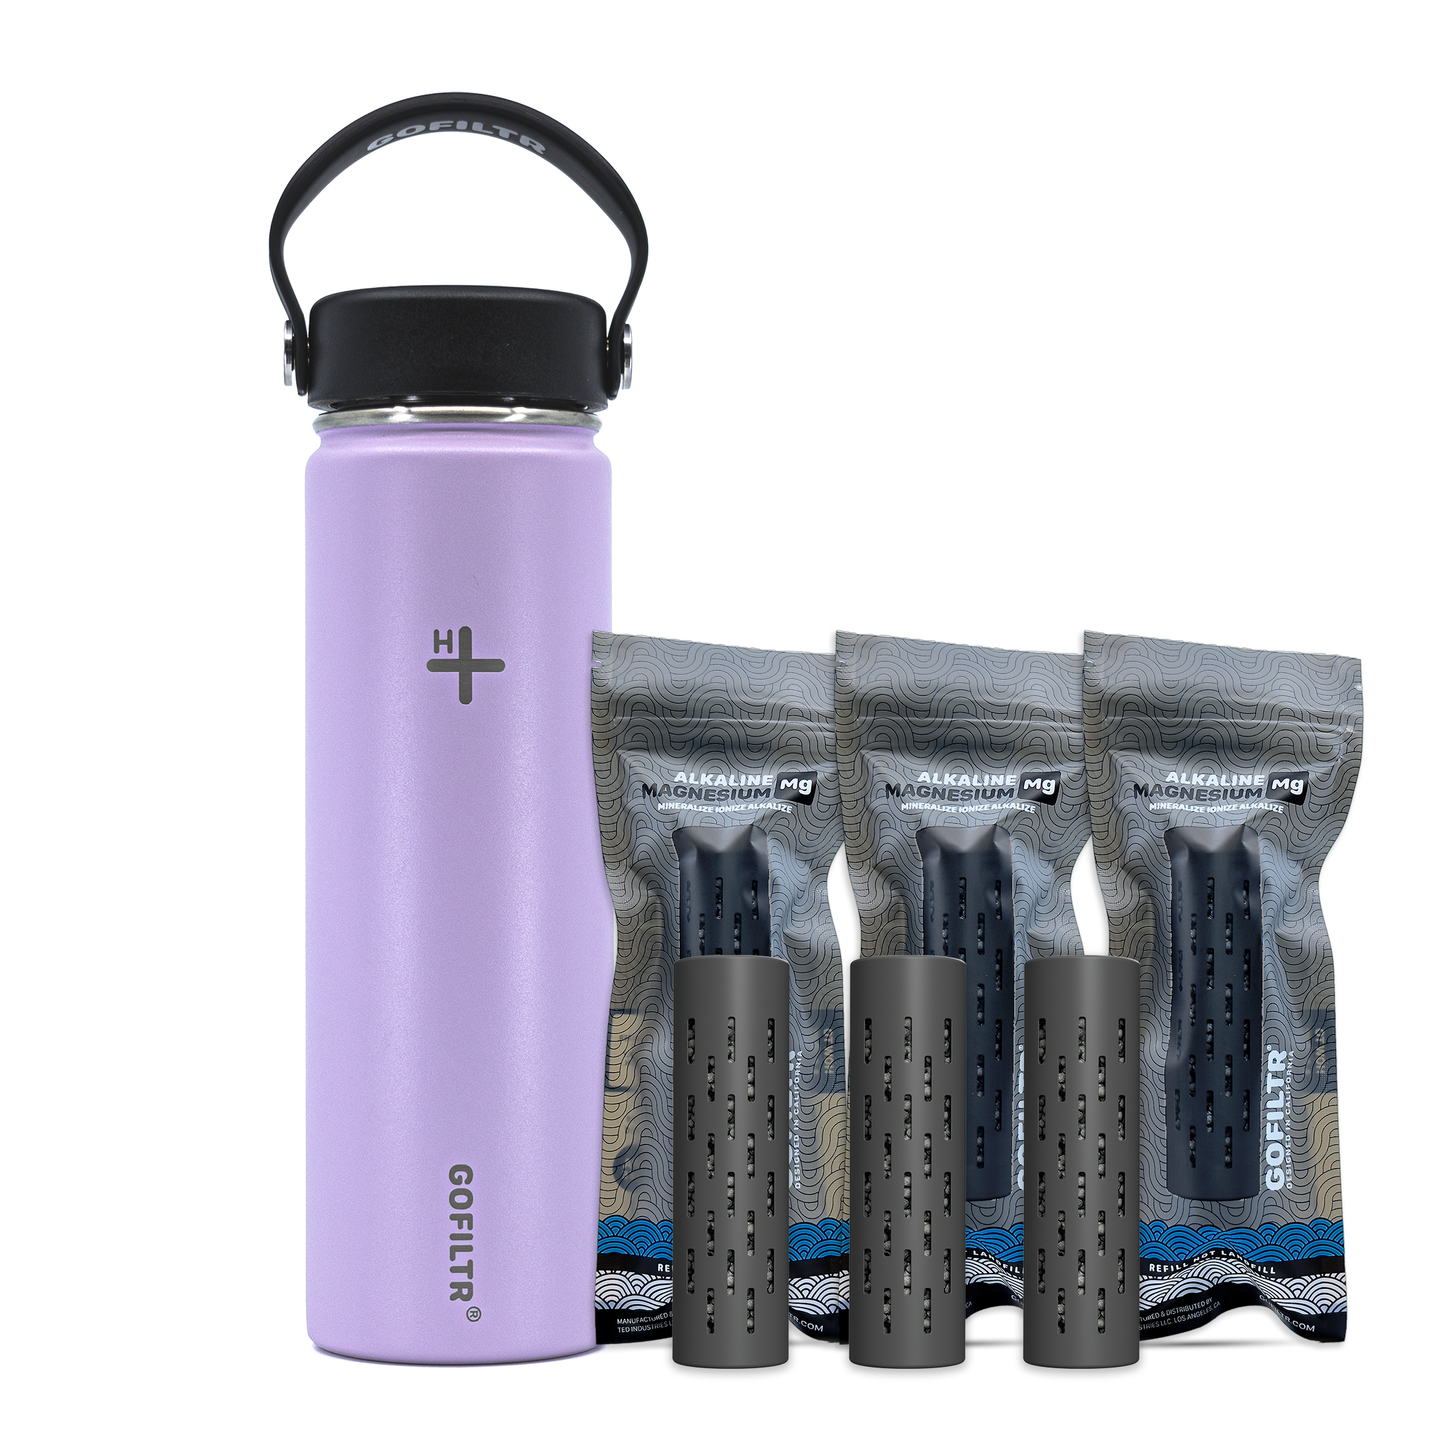 GOFILTR Alkaline Water Bottle 22 oz - Insulated Water Bottle That Creates 9.5 pH Alkaline Water